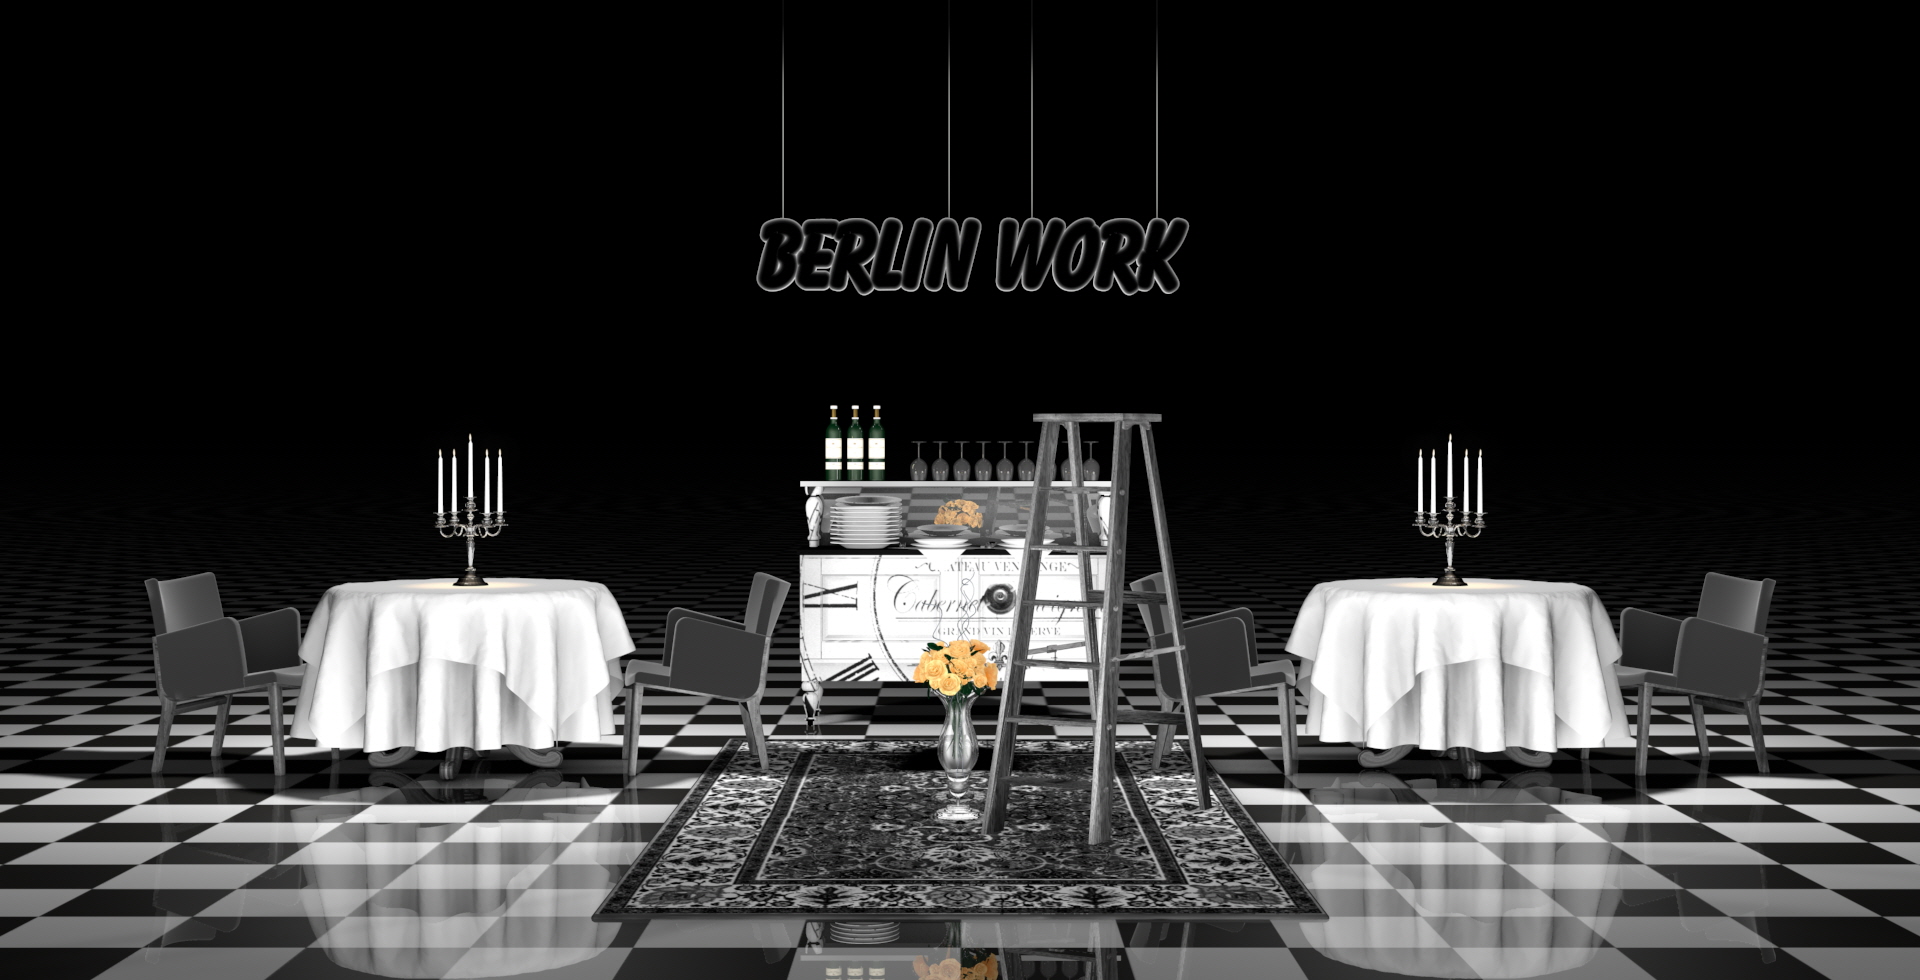 Berlinwork